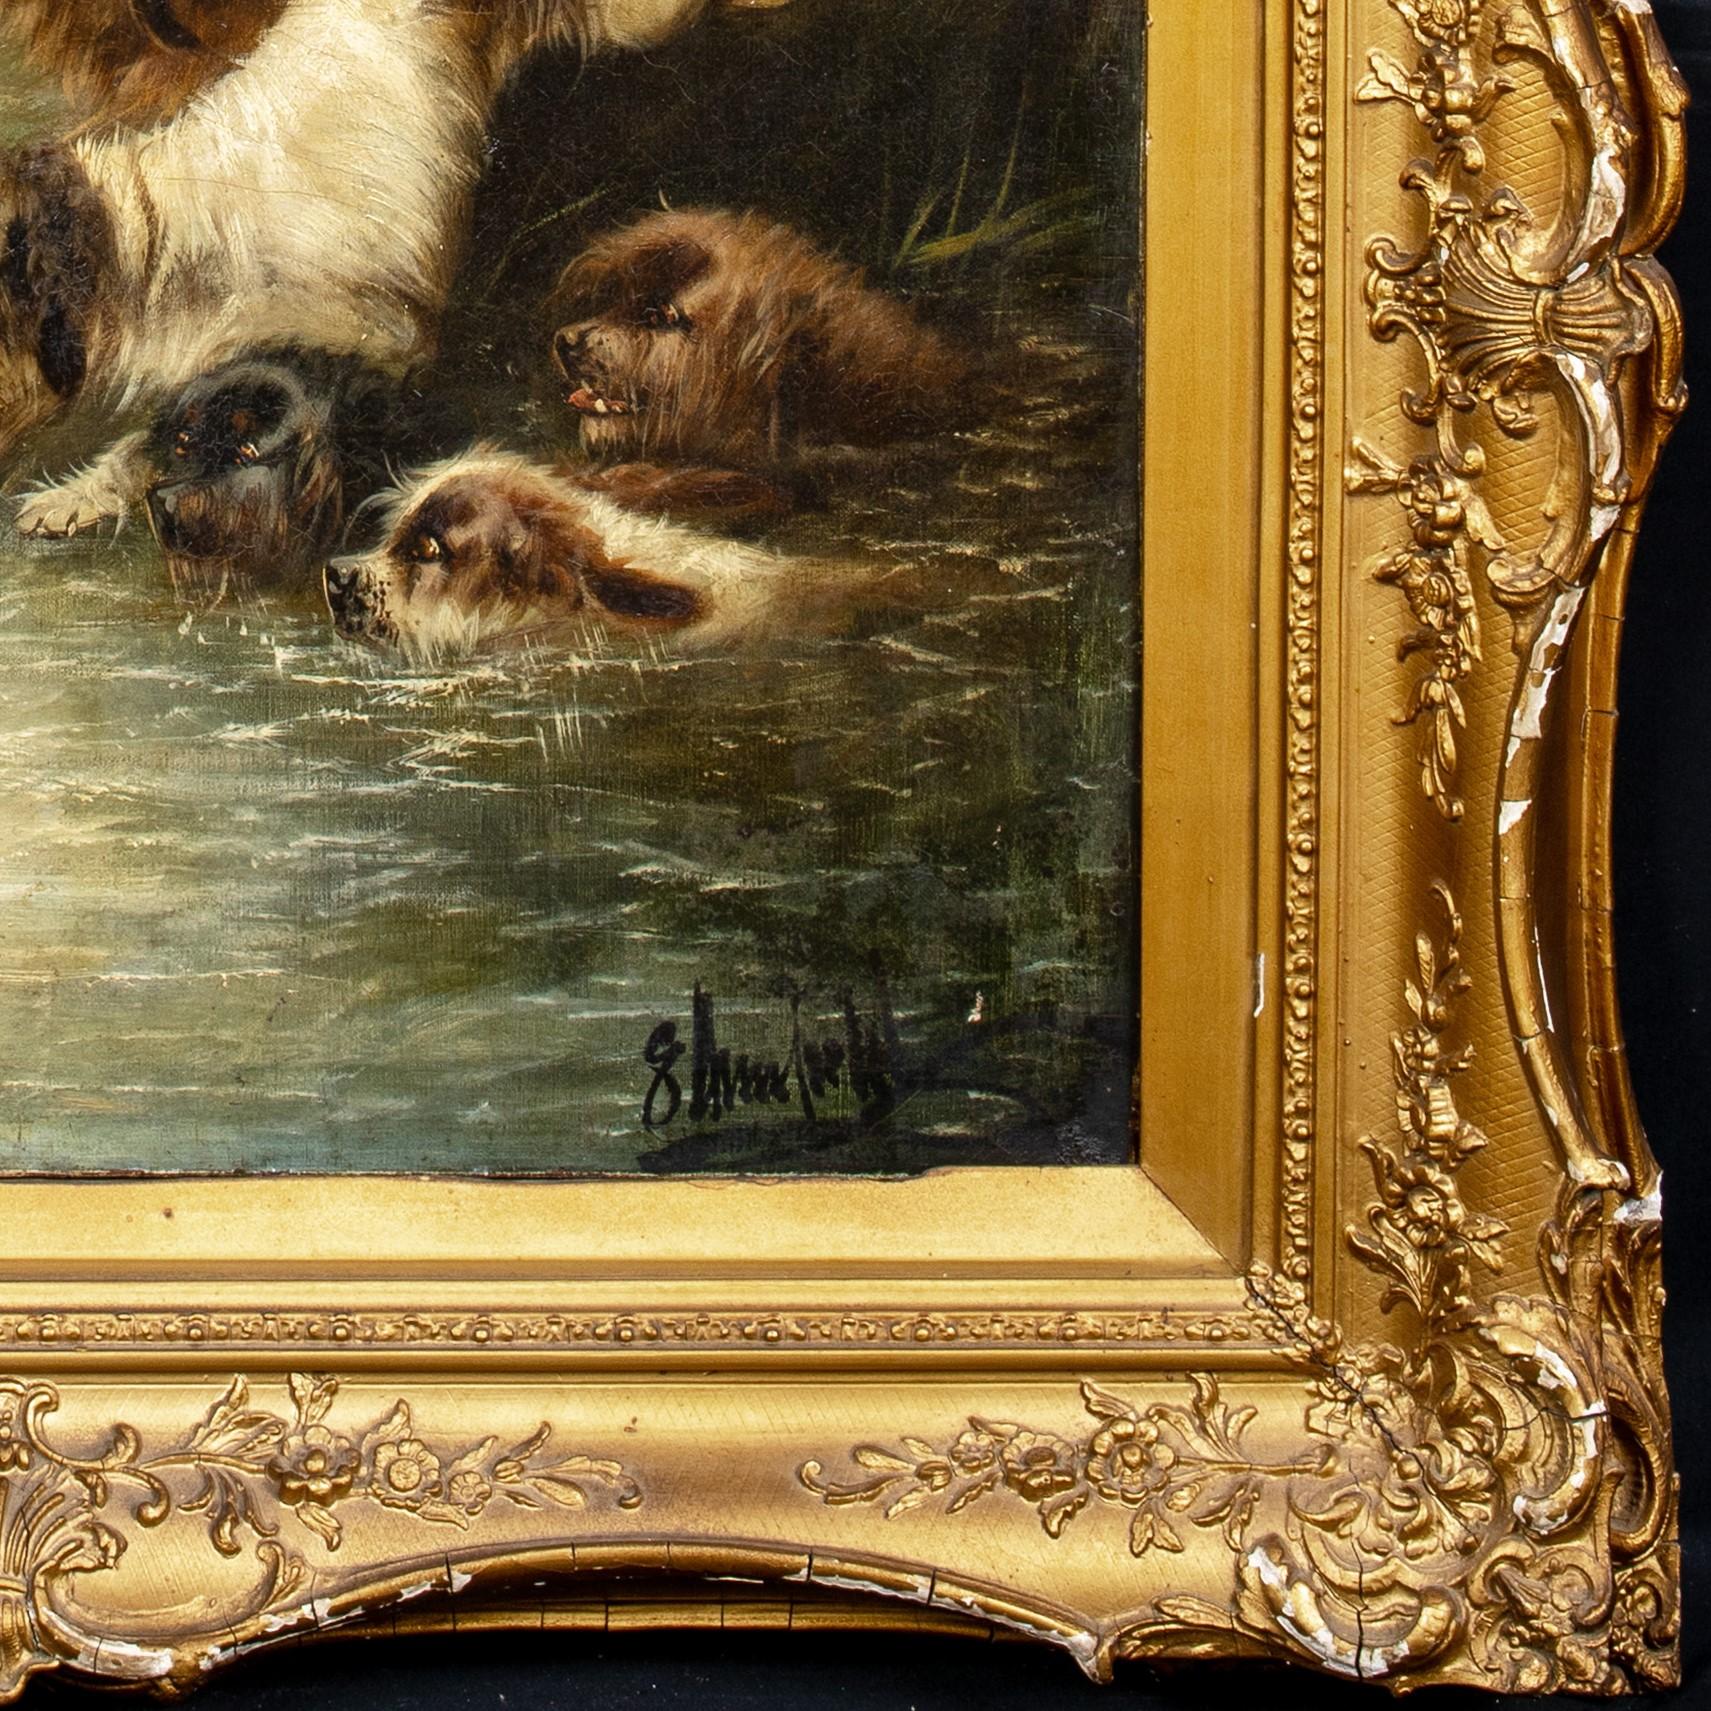 La chasse à la loutre, datée de 1901

par Edward Armfield (1817-1896)

Grande scène du 19e siècle représentant une chasse à la loutre avec des chiens de chasse se rapprochant du gibier, huile sur toile d'Edward Armfield. Exemple d'excellente qualité